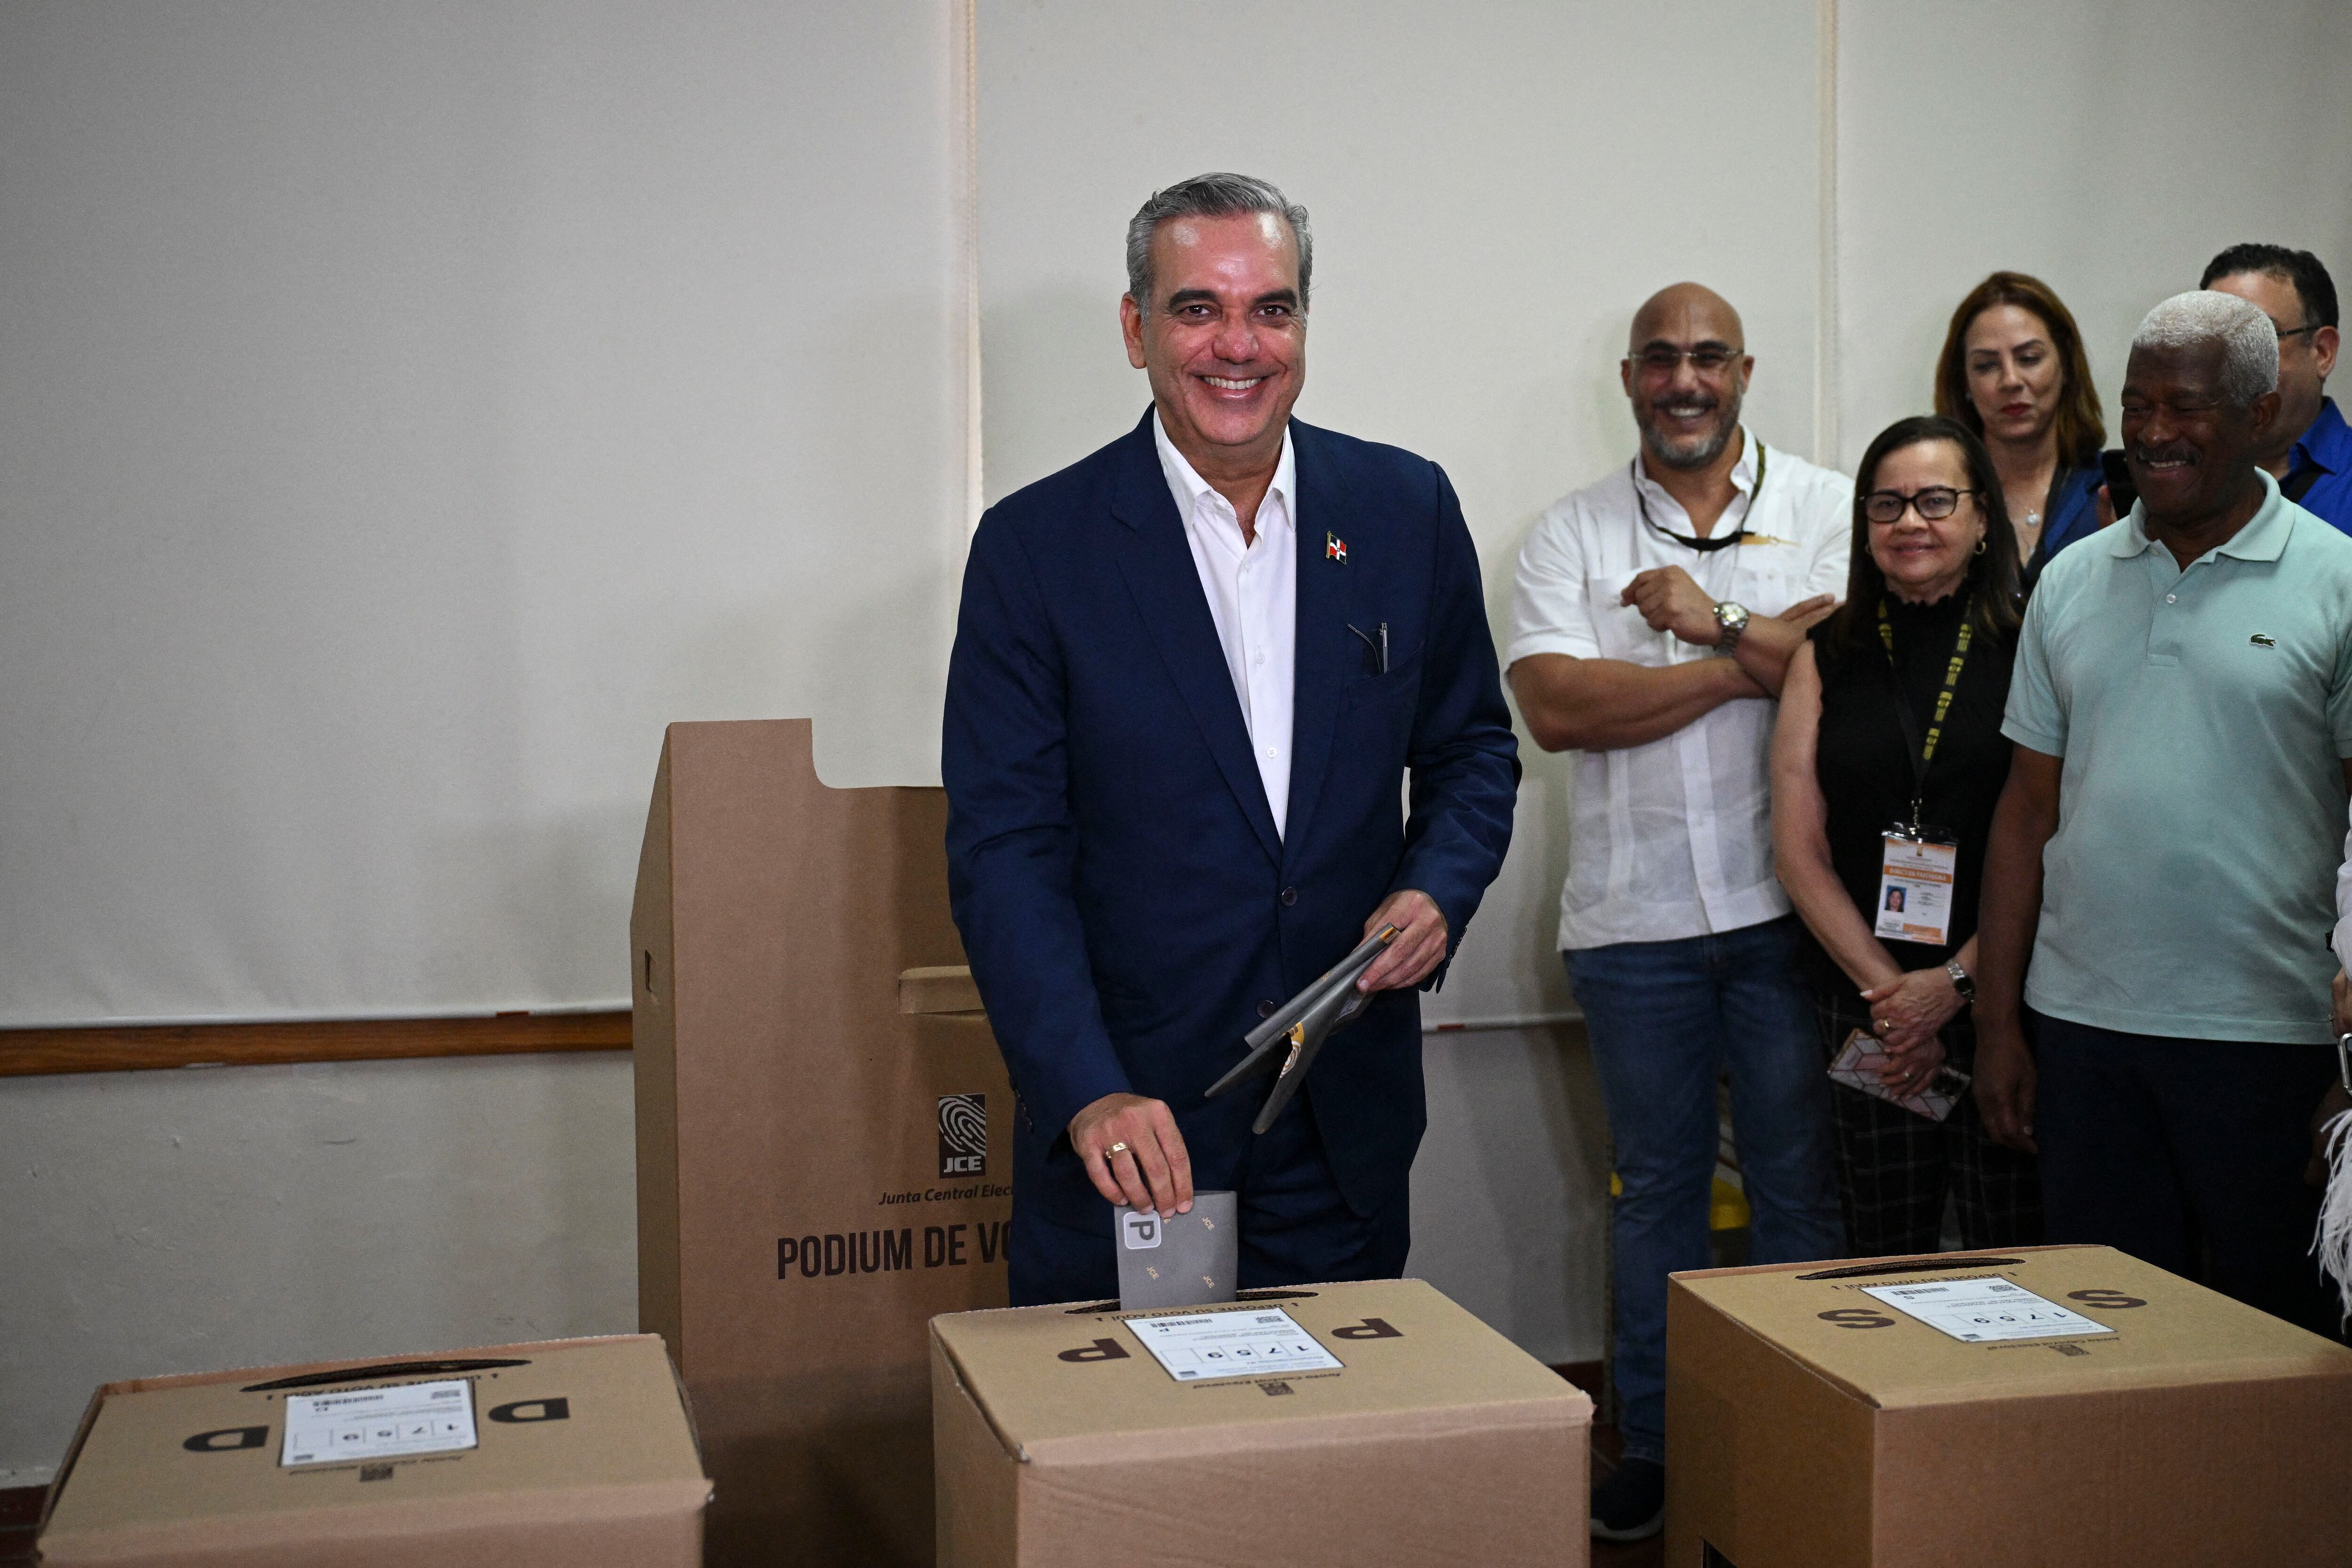 El presidente de la República Dominicana y candidato presidencial del Partido Revolucionario Moderno (PRM), Luis Abinader, deposita su voto en un colegio electoral durante las elecciones generales en Santo Domingo.